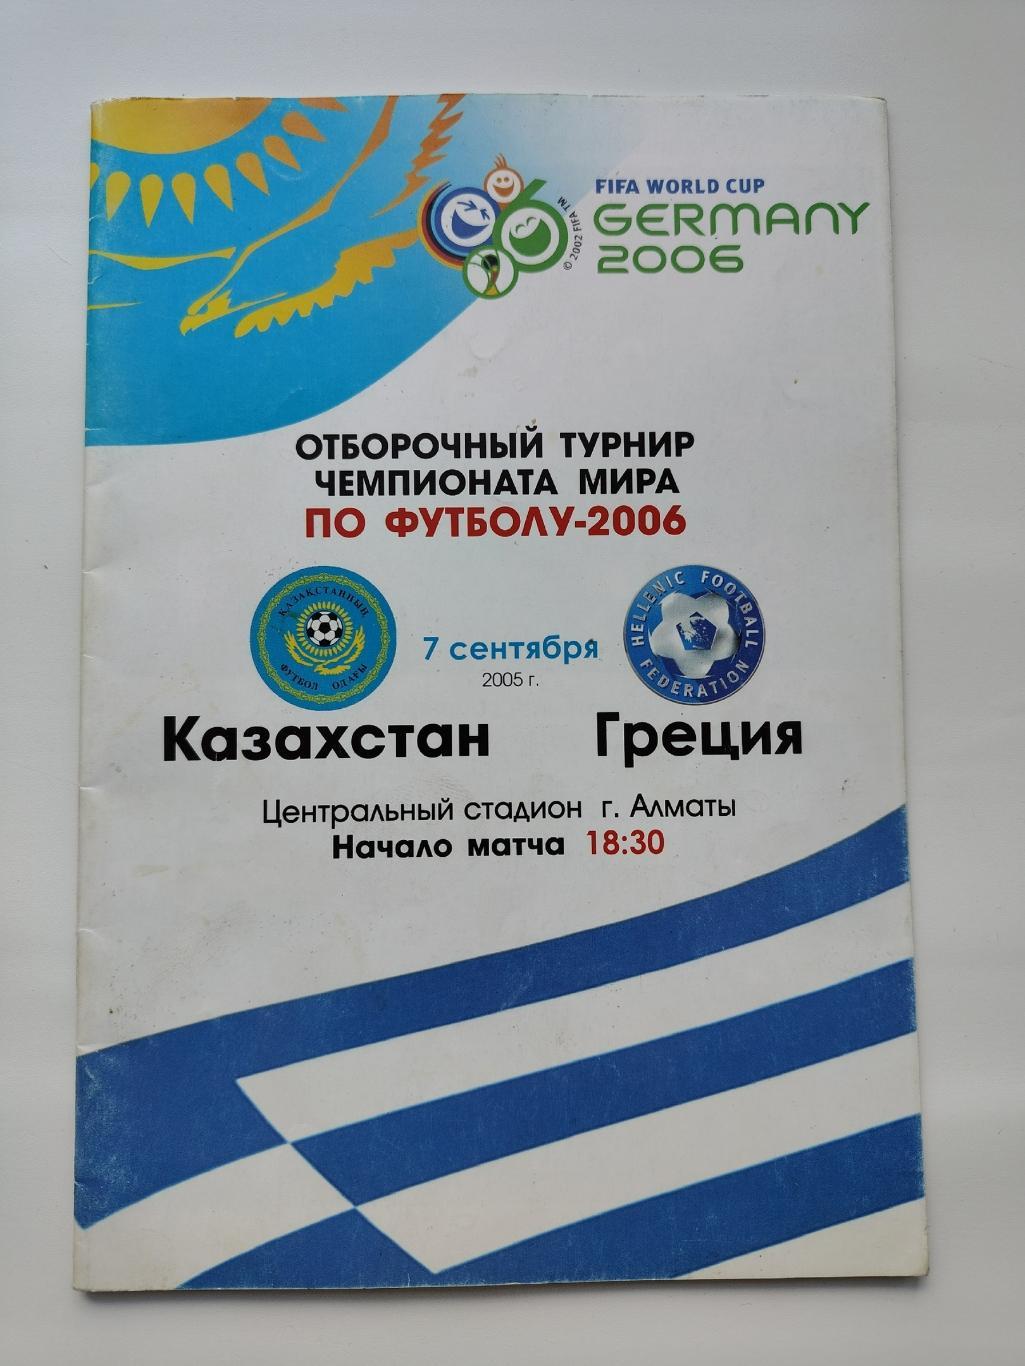 Алматы. Казахстан - Греция 2005 отбор.ЧМ